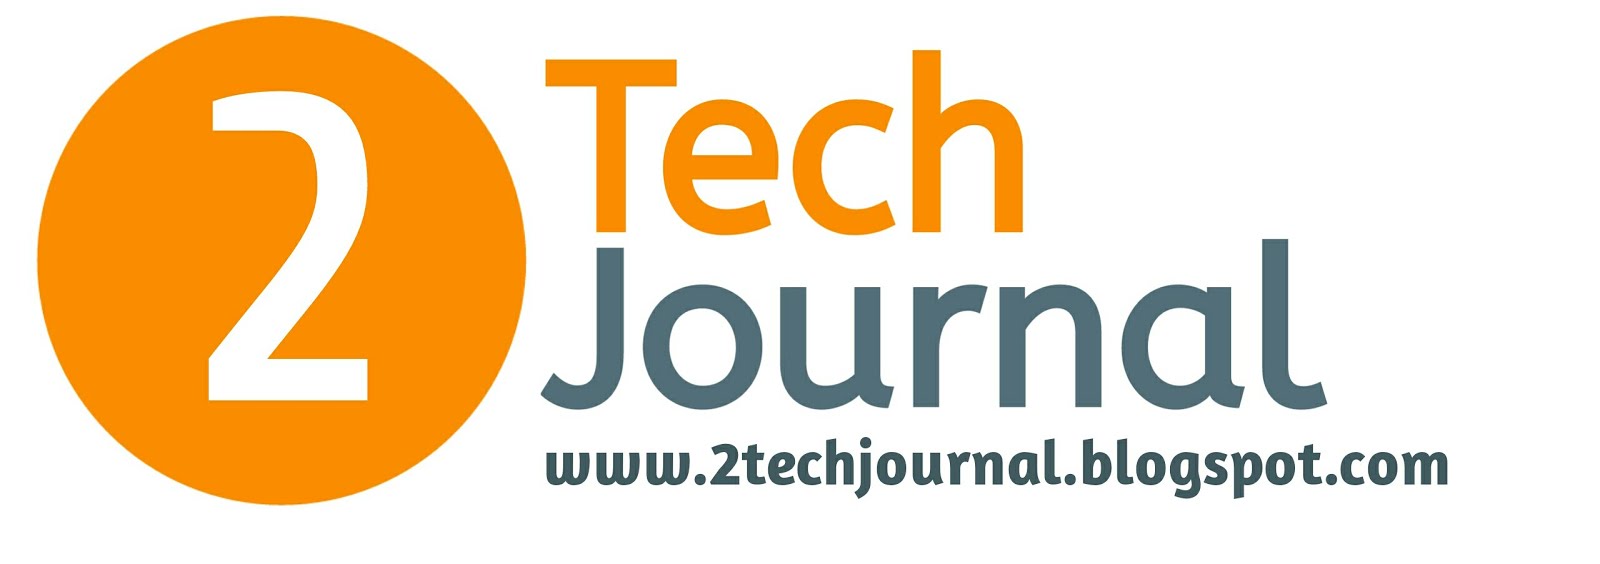 2Tech Journal || টেক নিউজ, টিউটোরিয়াল, আপডেট, ট্রিকস এবং টিপস